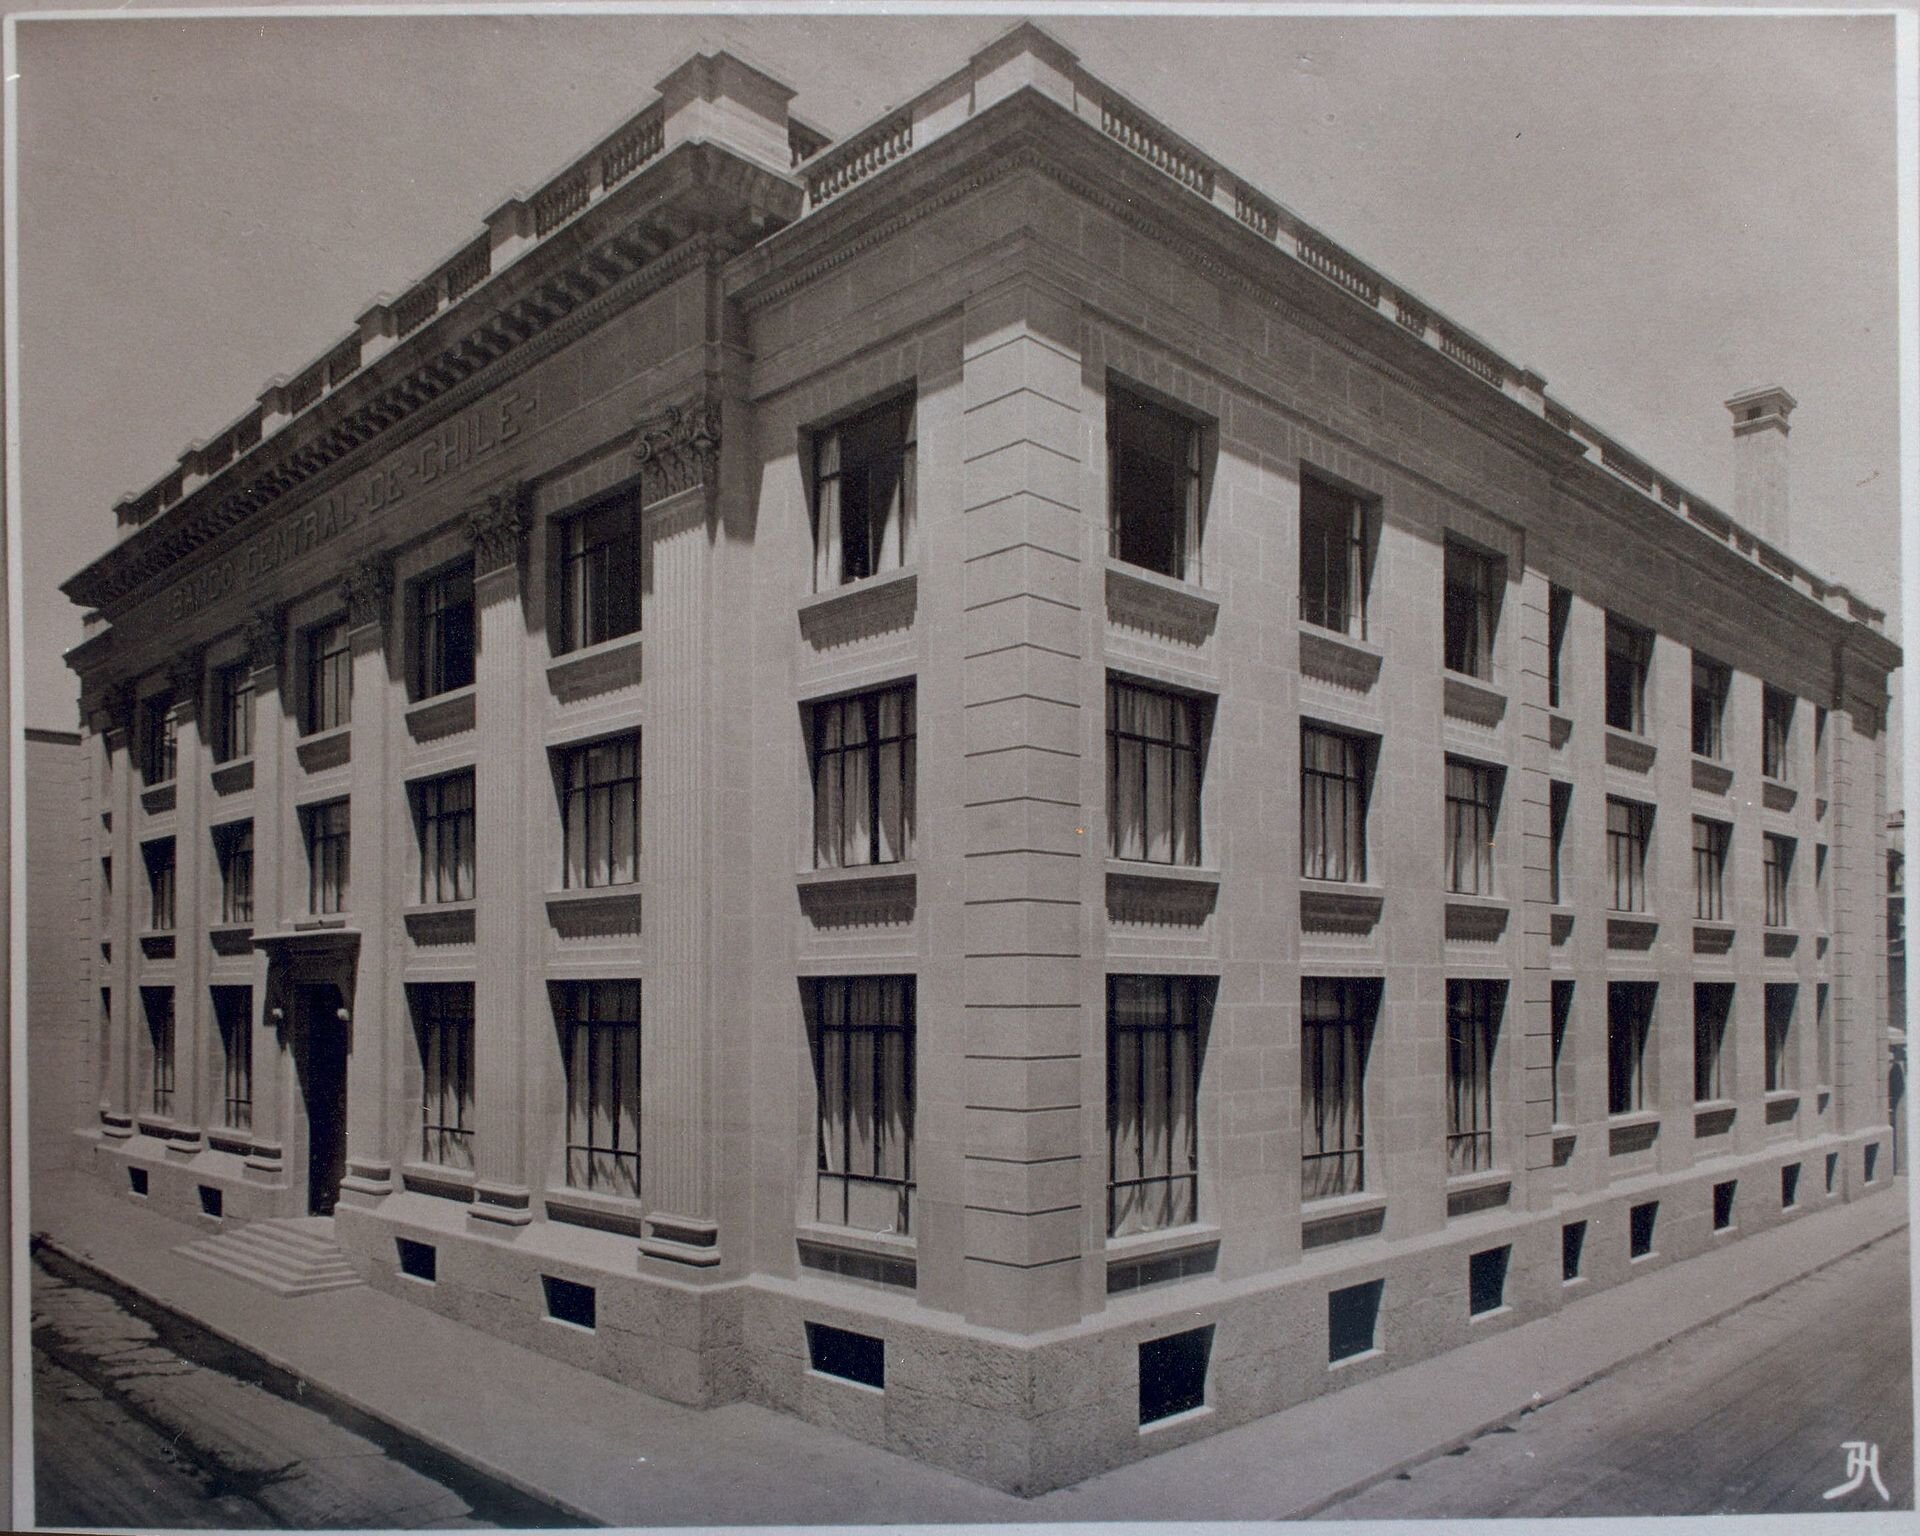 Edificio_del_Banco_1930_(26524138444).jpg